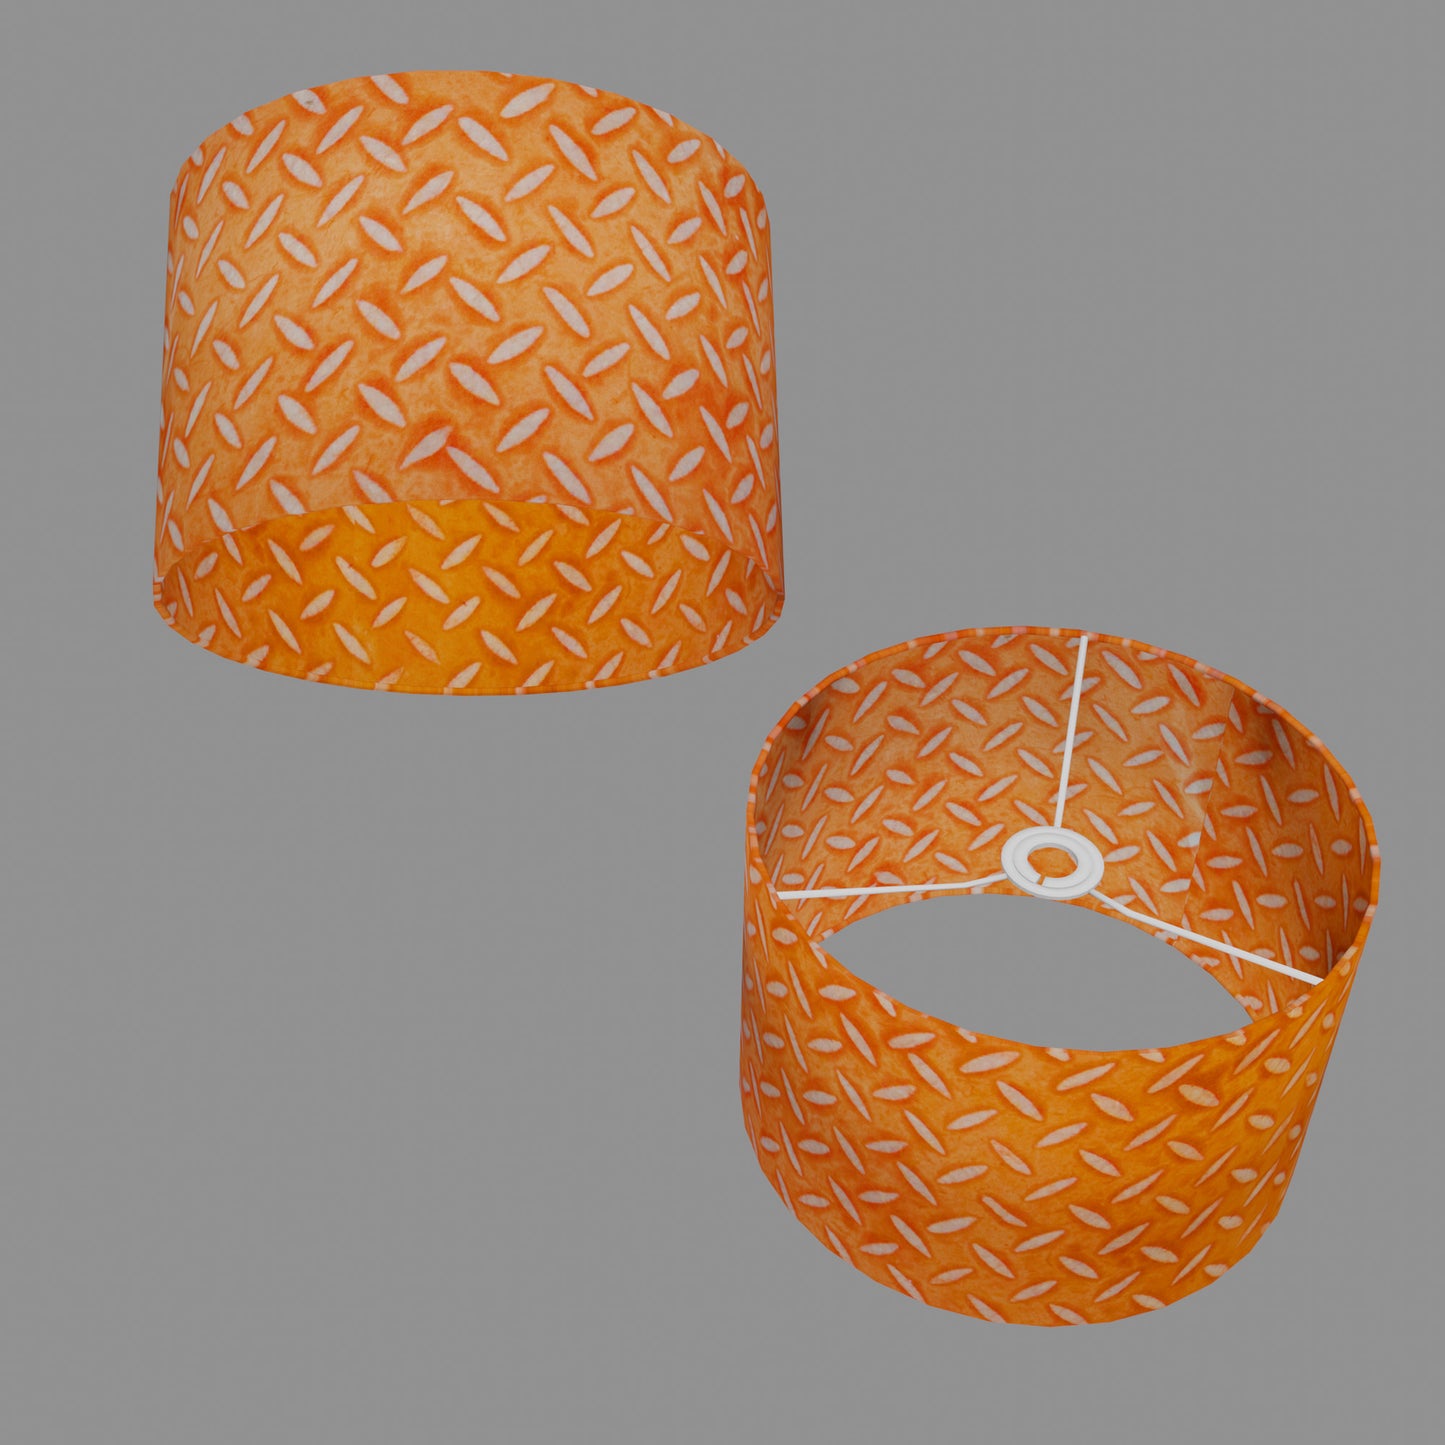 Drum Lamp Shade - P91 - Batik Tread Plate Orange, 30cm(d) x 20cm(h)